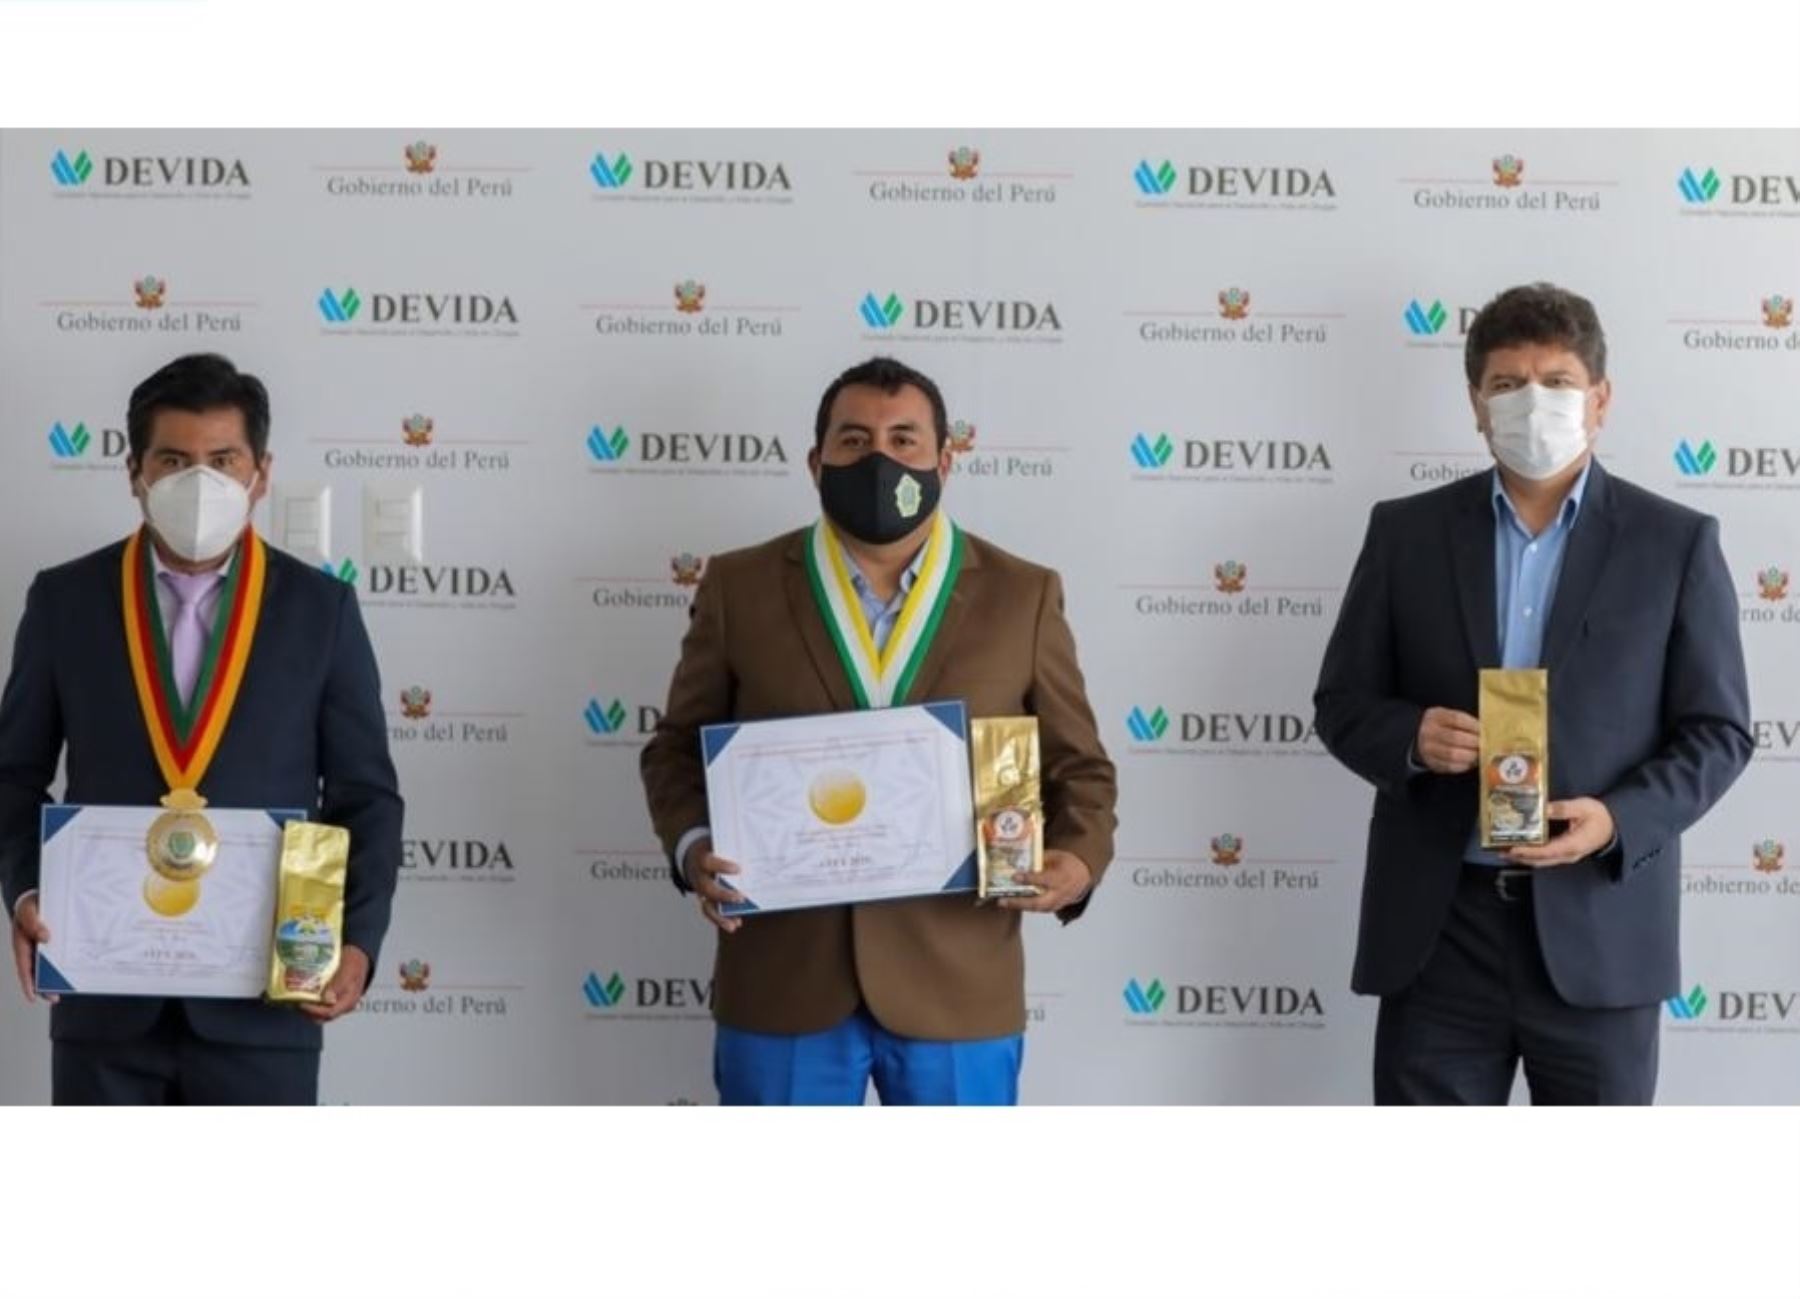 Devida distingue a los caficultores de Puno que obtuvieron medallas en el VI Concurso Internacional de Cafés Tostados al Origen AVPA–París 2020, en Francia. ANDINA/Difusión